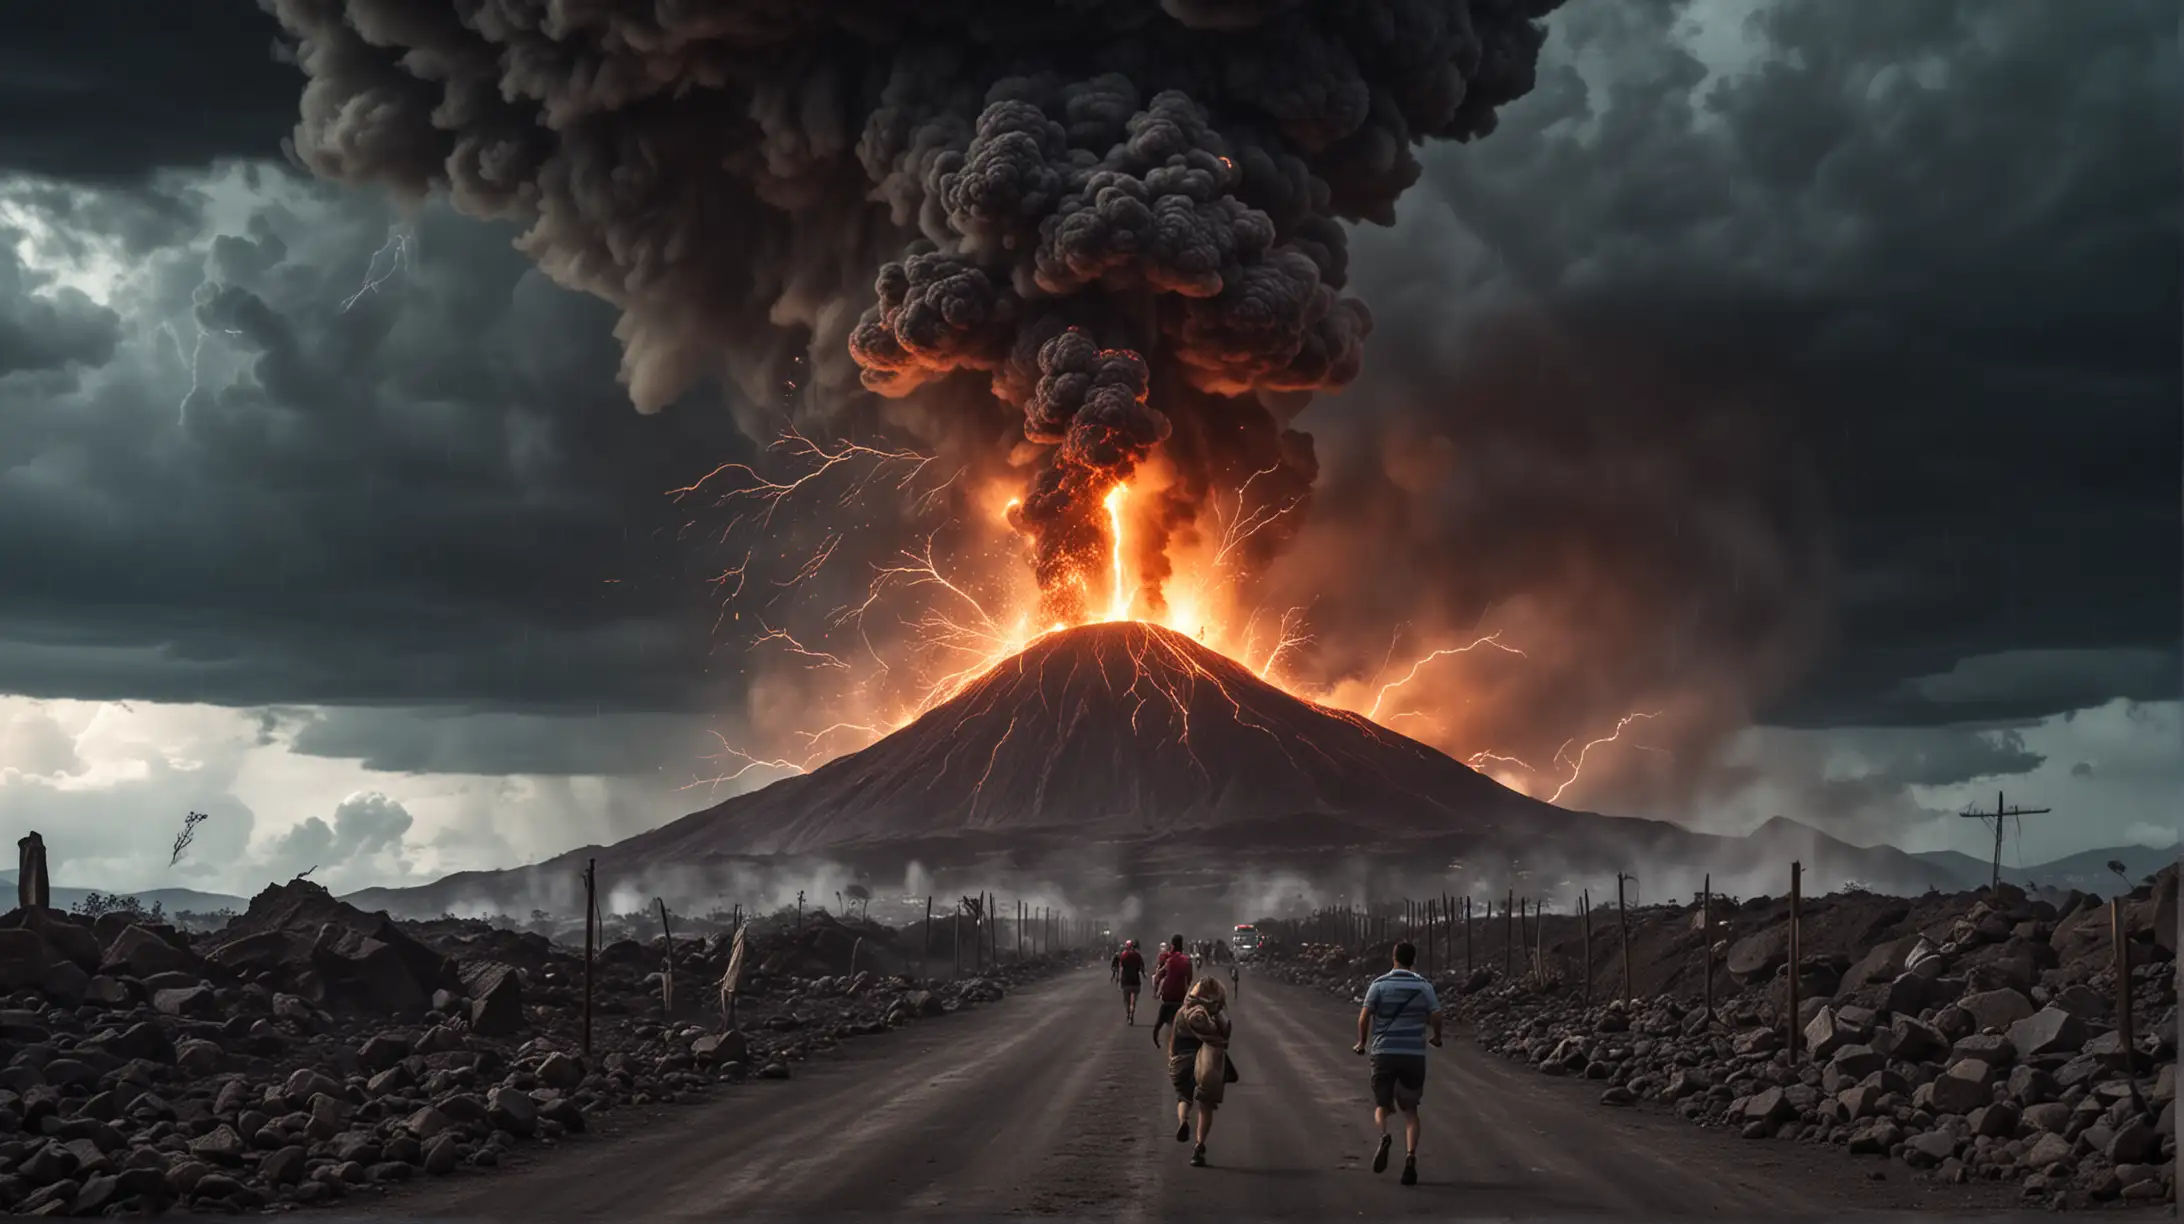 Massive vulcano exploding , people running away .  Dark stormy weather , lightning, smoke